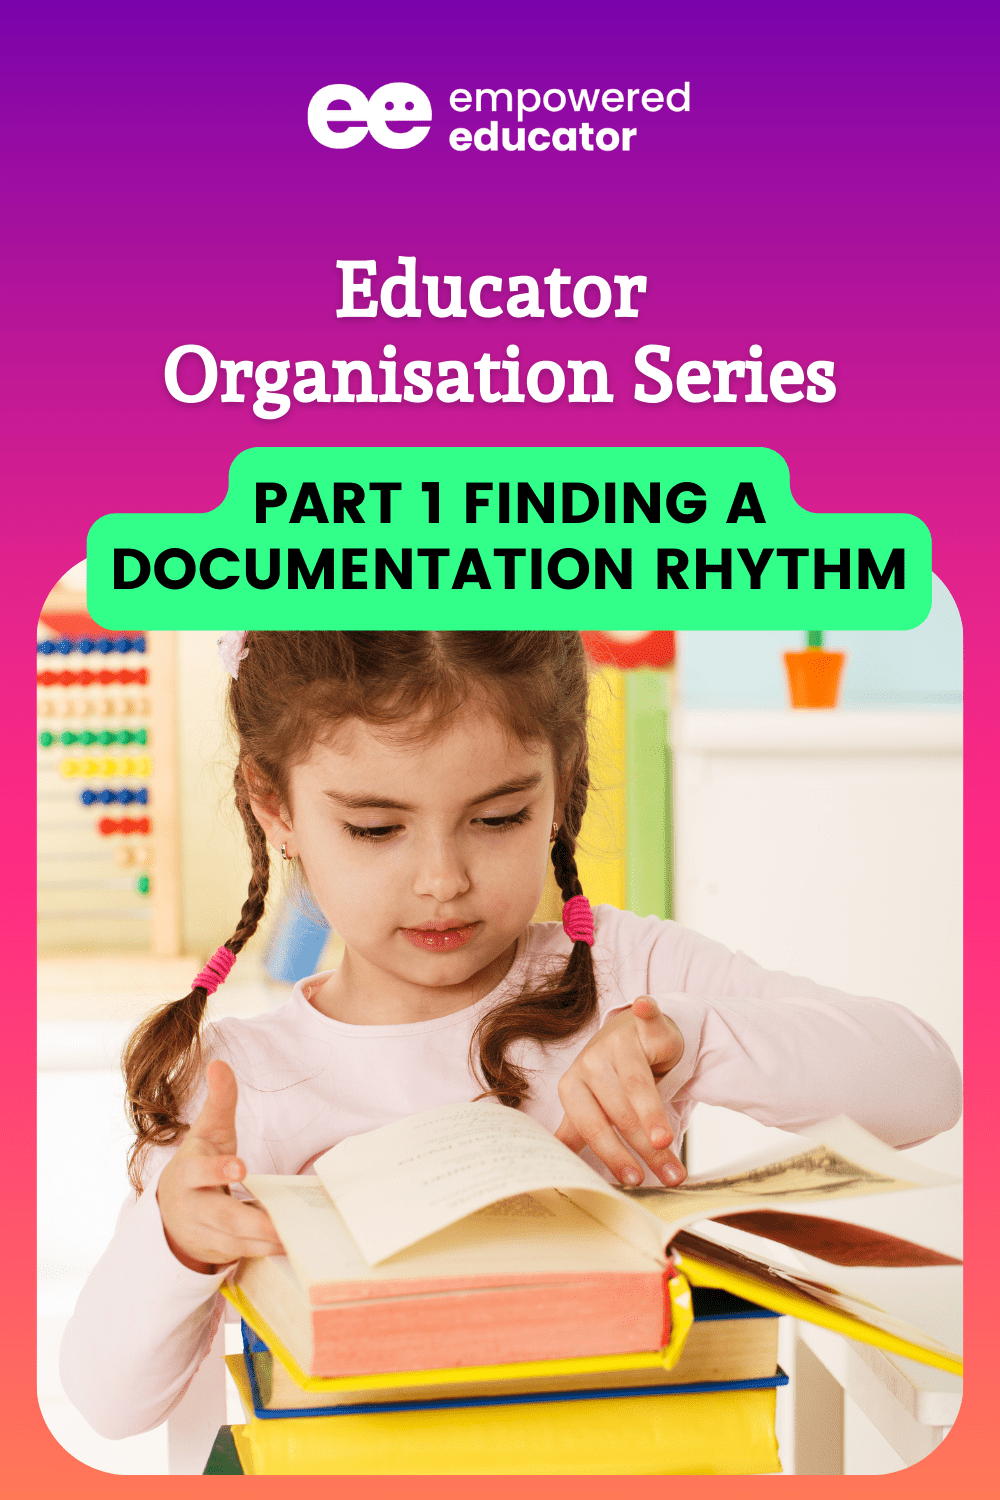 Part 1 Finding a Documentation Rhythm